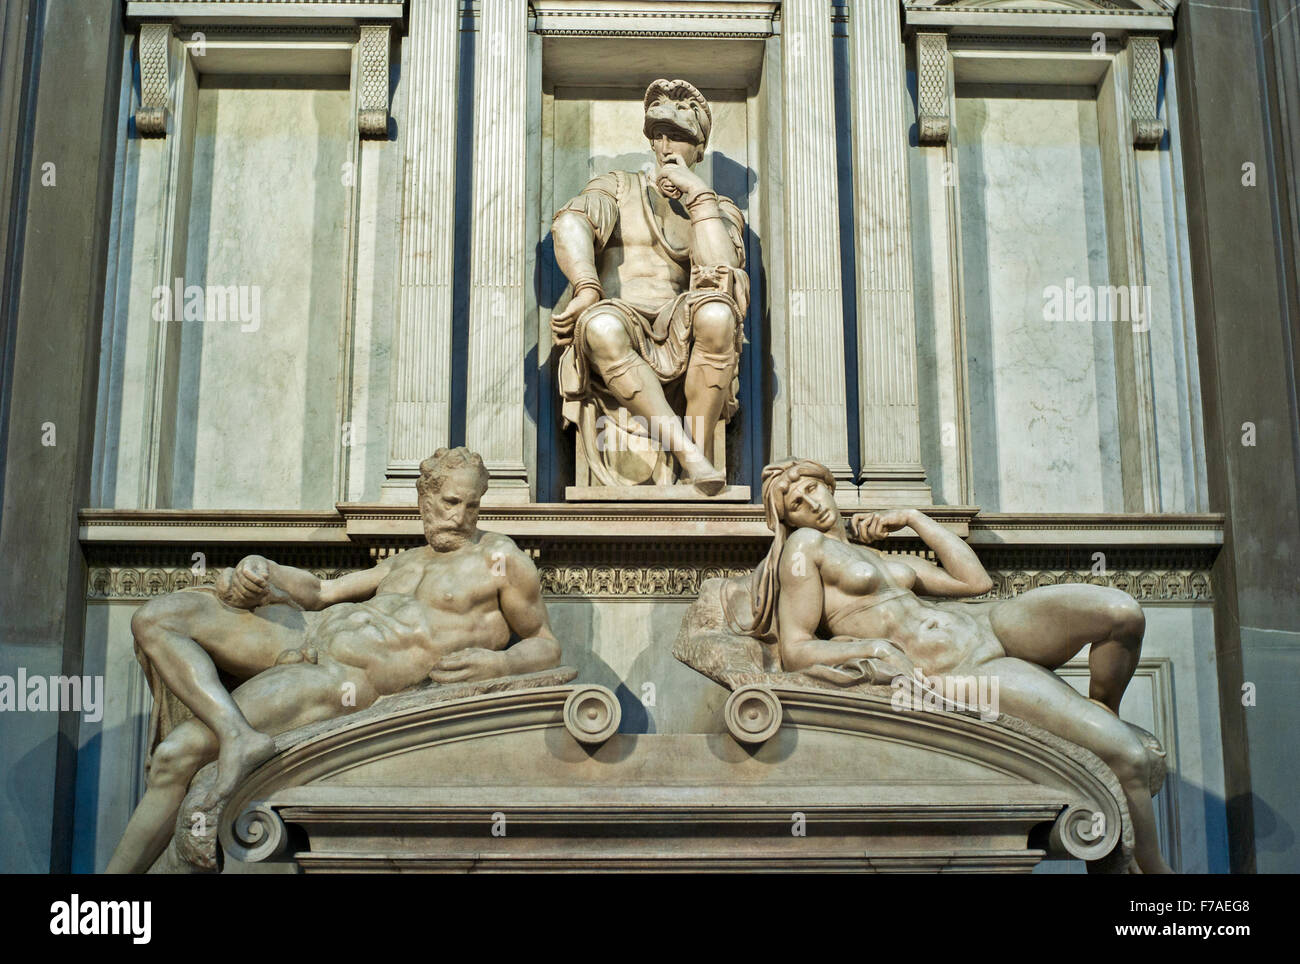 Tombe de Piero di Lorenzo de' Medici, sculpture de Michel-Ange, nouvelle sacristie, Basilica San Lore chapelle des Médicis, Florence, Italie Banque D'Images